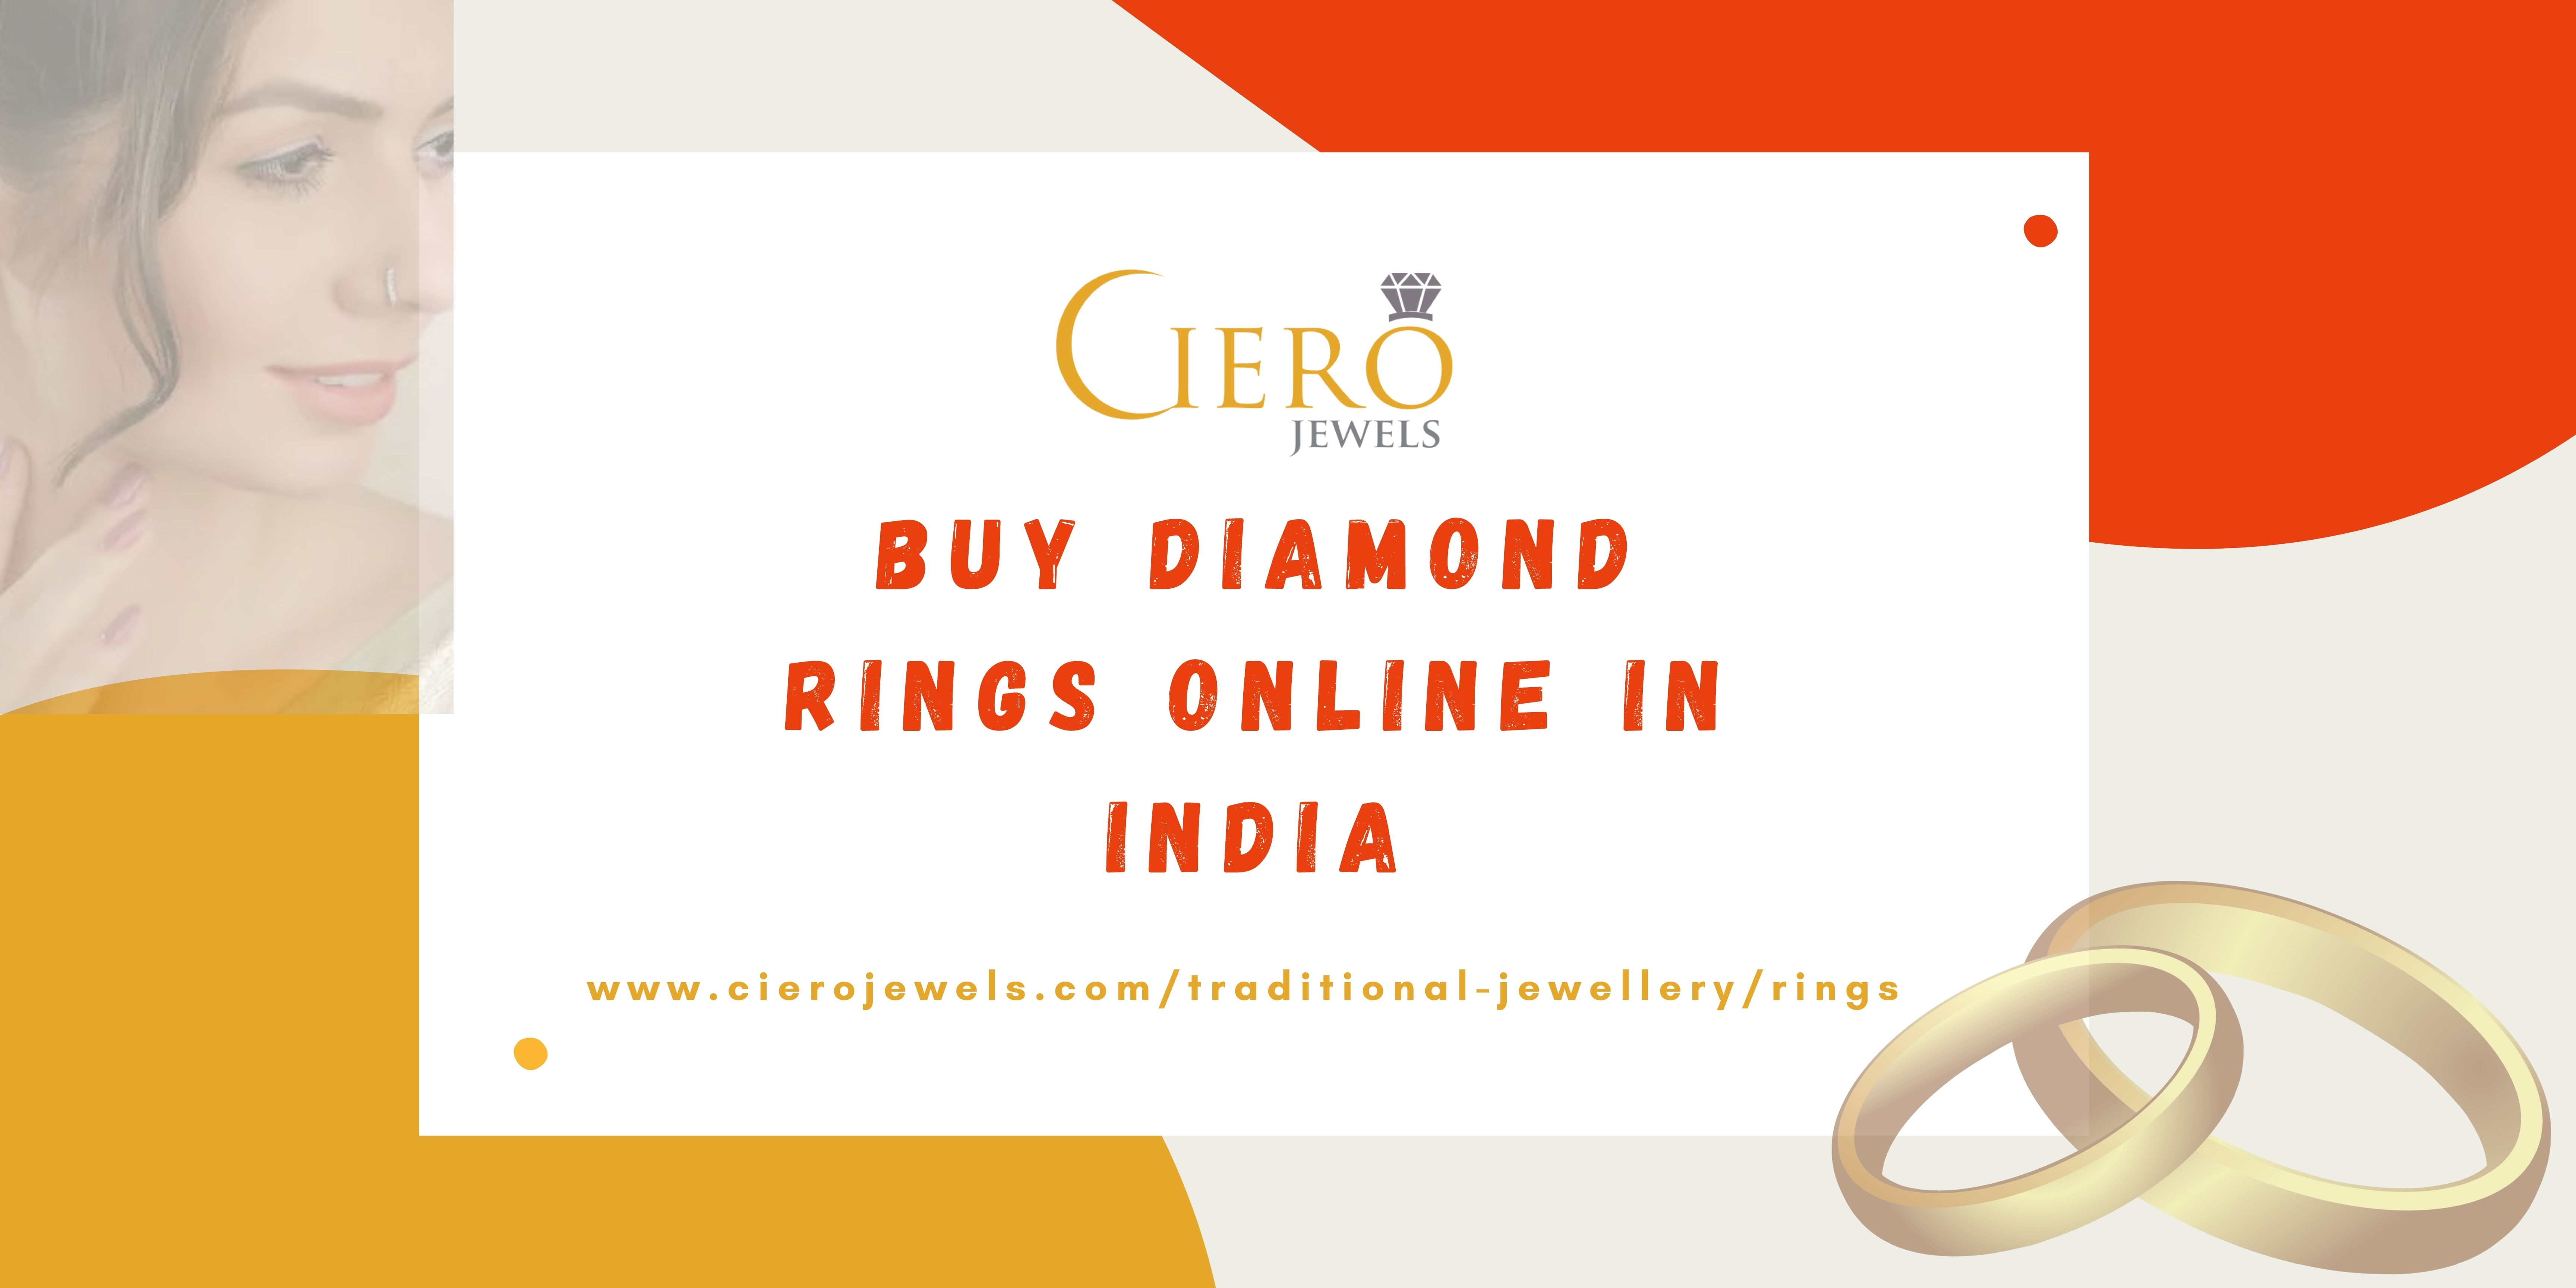 Buy%20Diamond%20Rings%20Online%20in%20India%20(httpswww.cierojewels.comtraditional-jewelleryrings).jpg